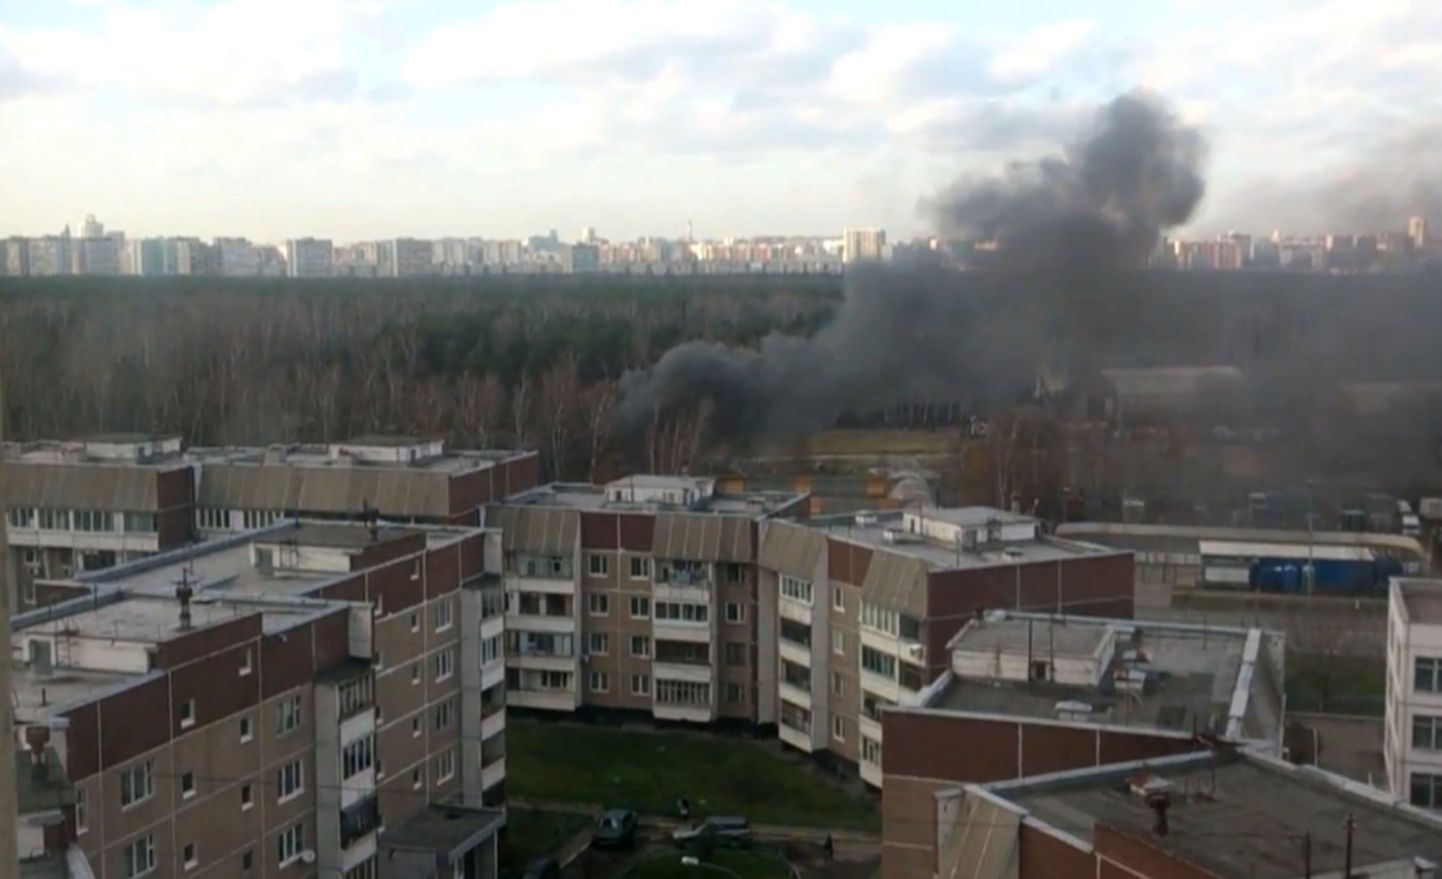 Suits Moskvas tõusmas kohast, kuhu kukkus täna helikopter.